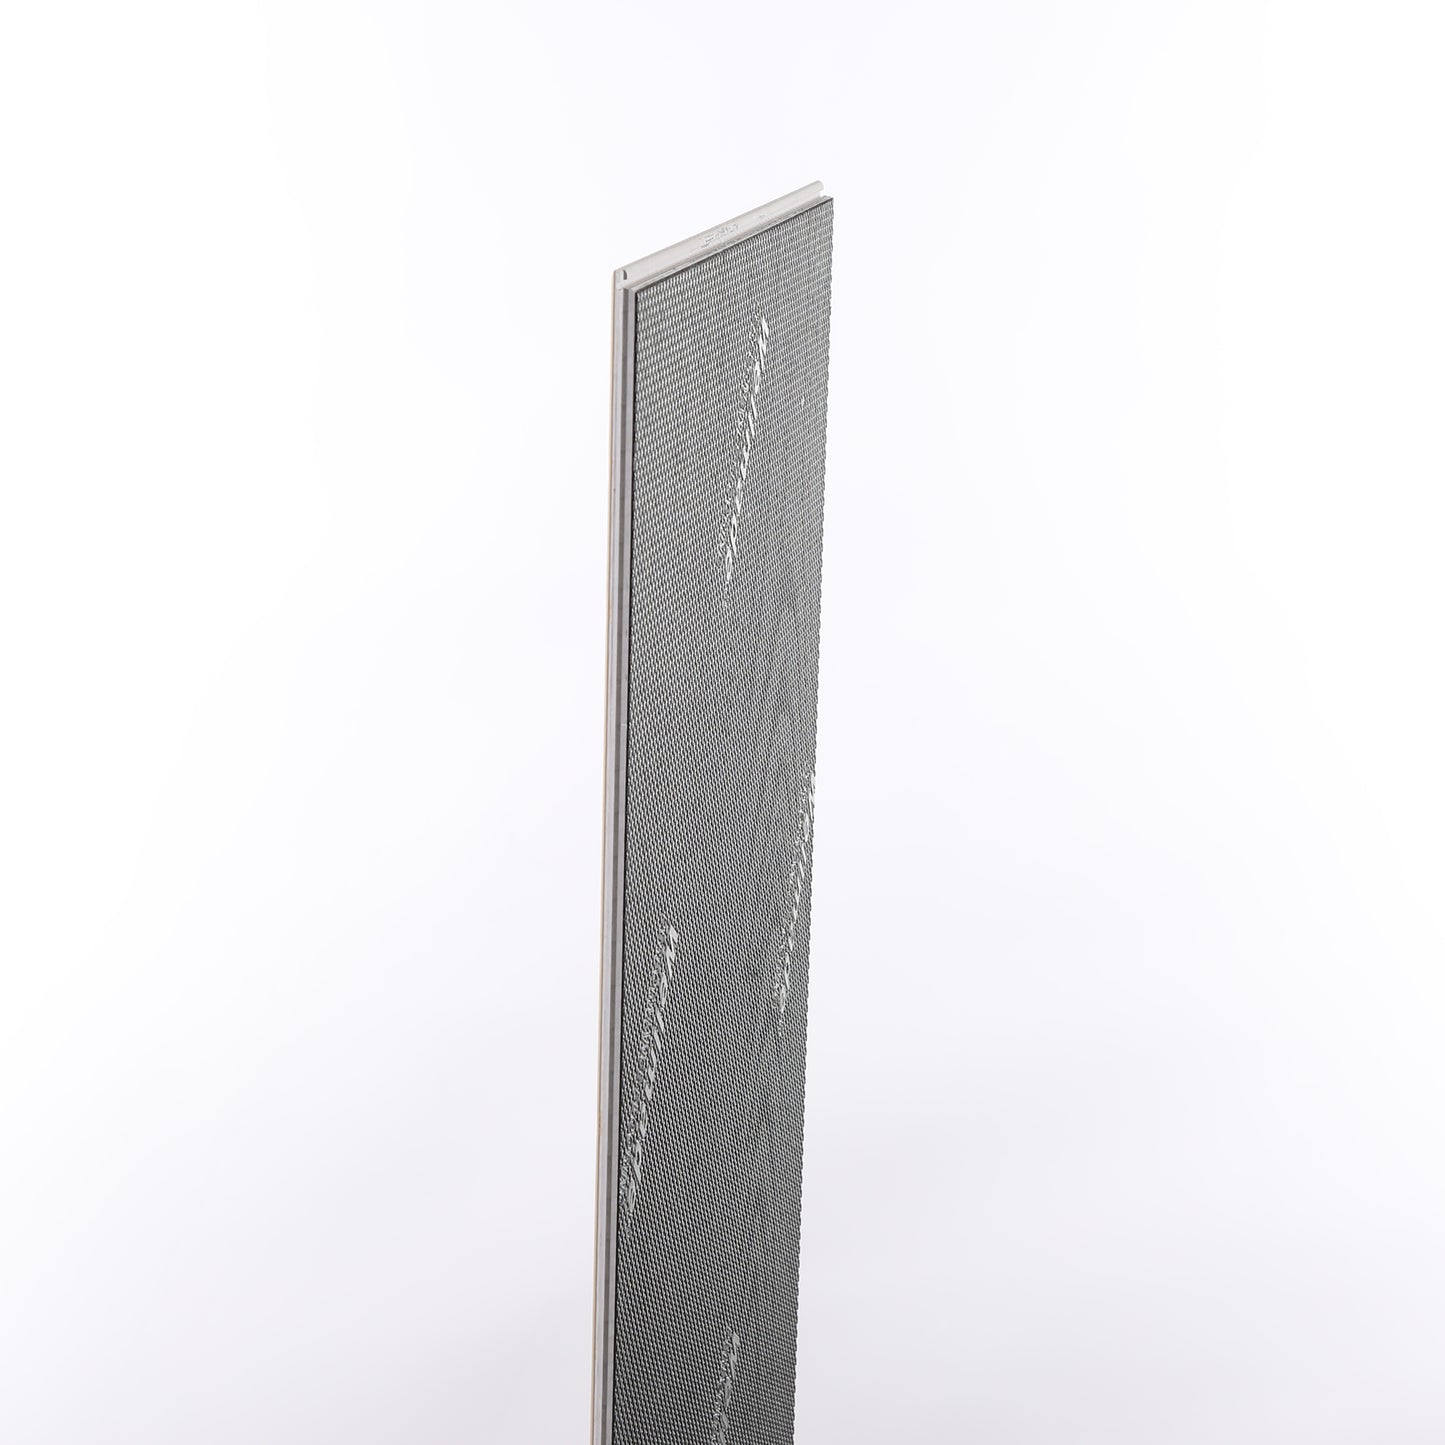 6mm Butterscotch EIR HDPC® Waterproof Luxury Vinyl Tile Flooring 9.13 in. Wide x 60 in. Long